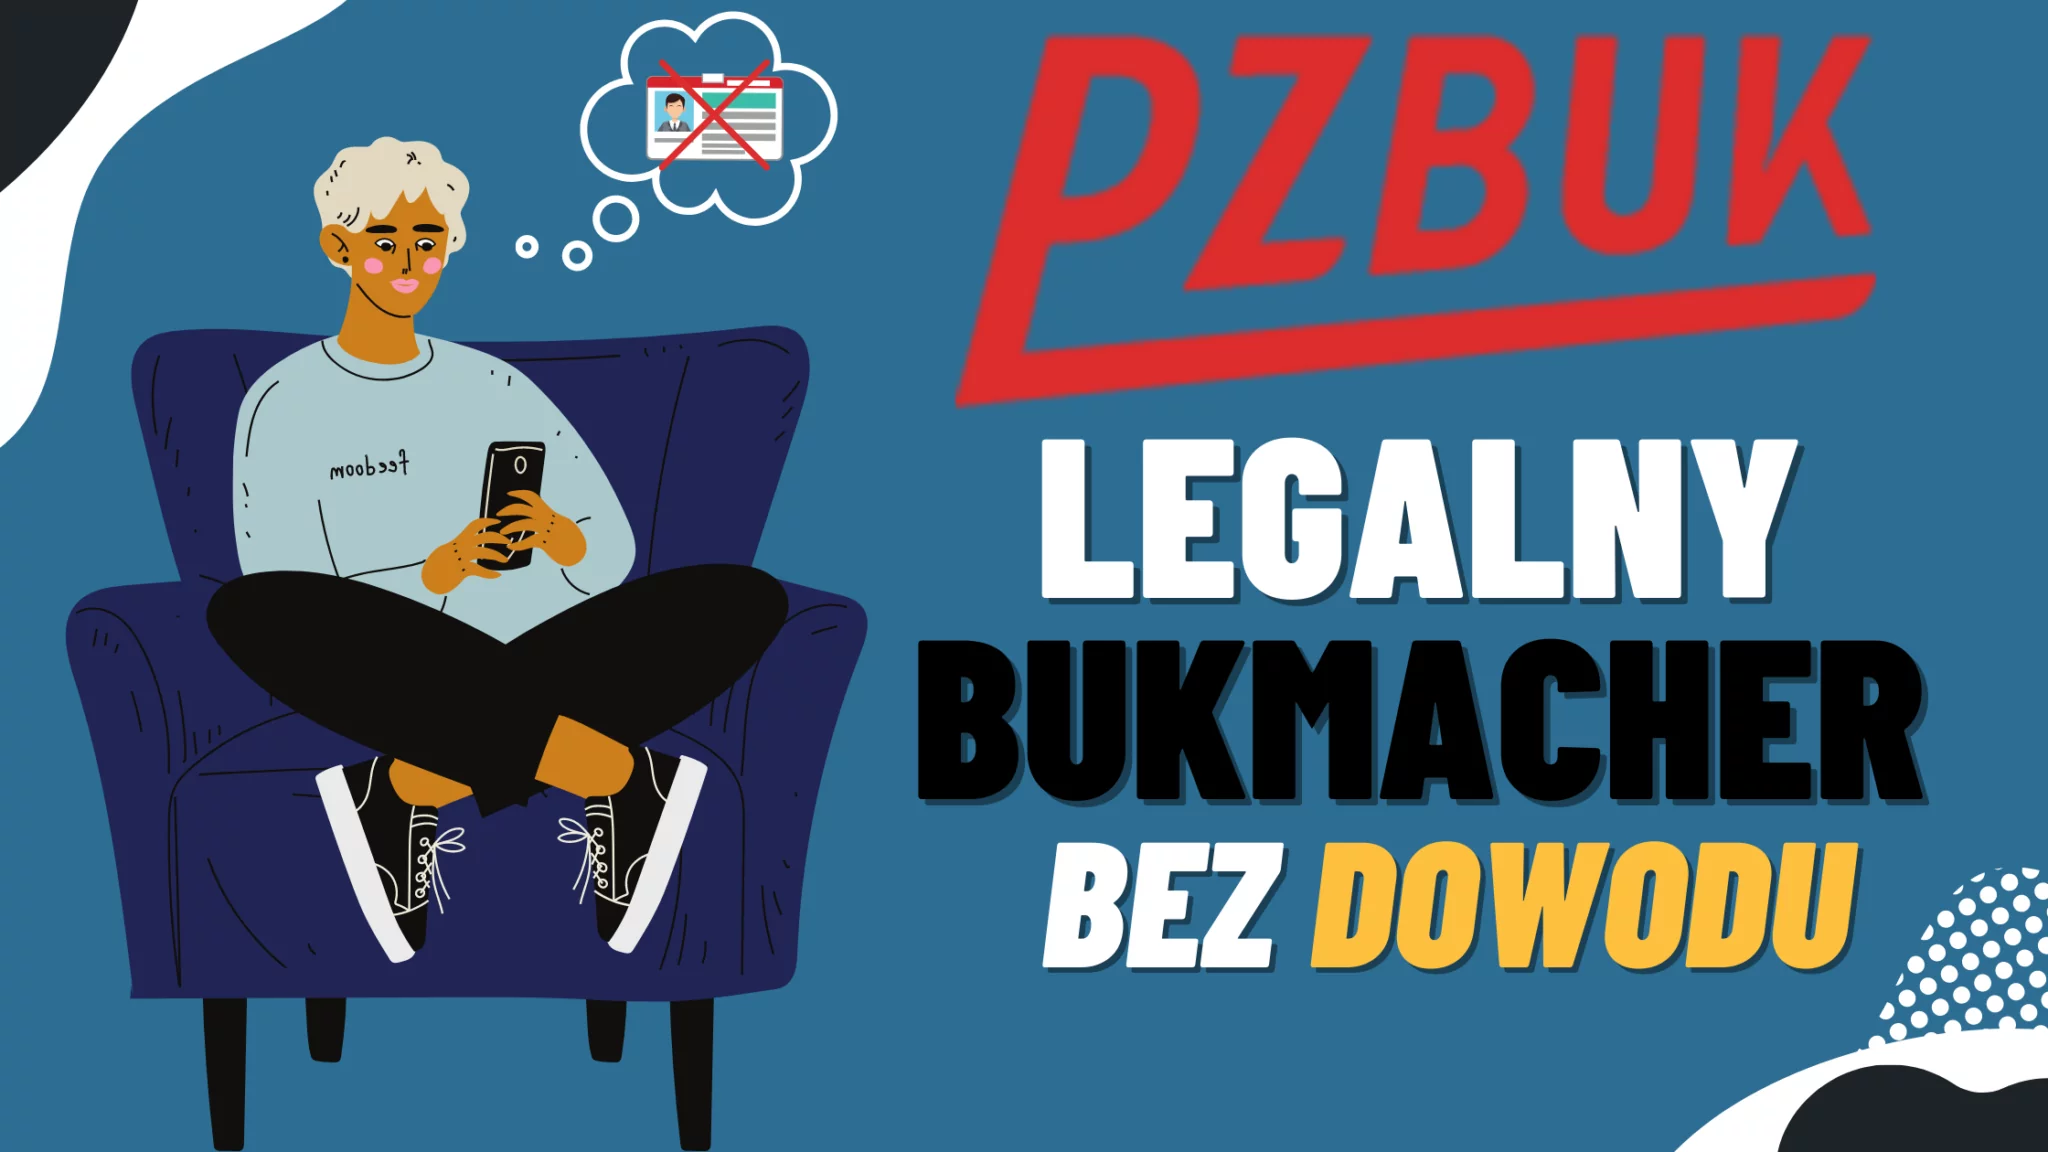 Polski legalny bukmacher PZBuk bez dowodu